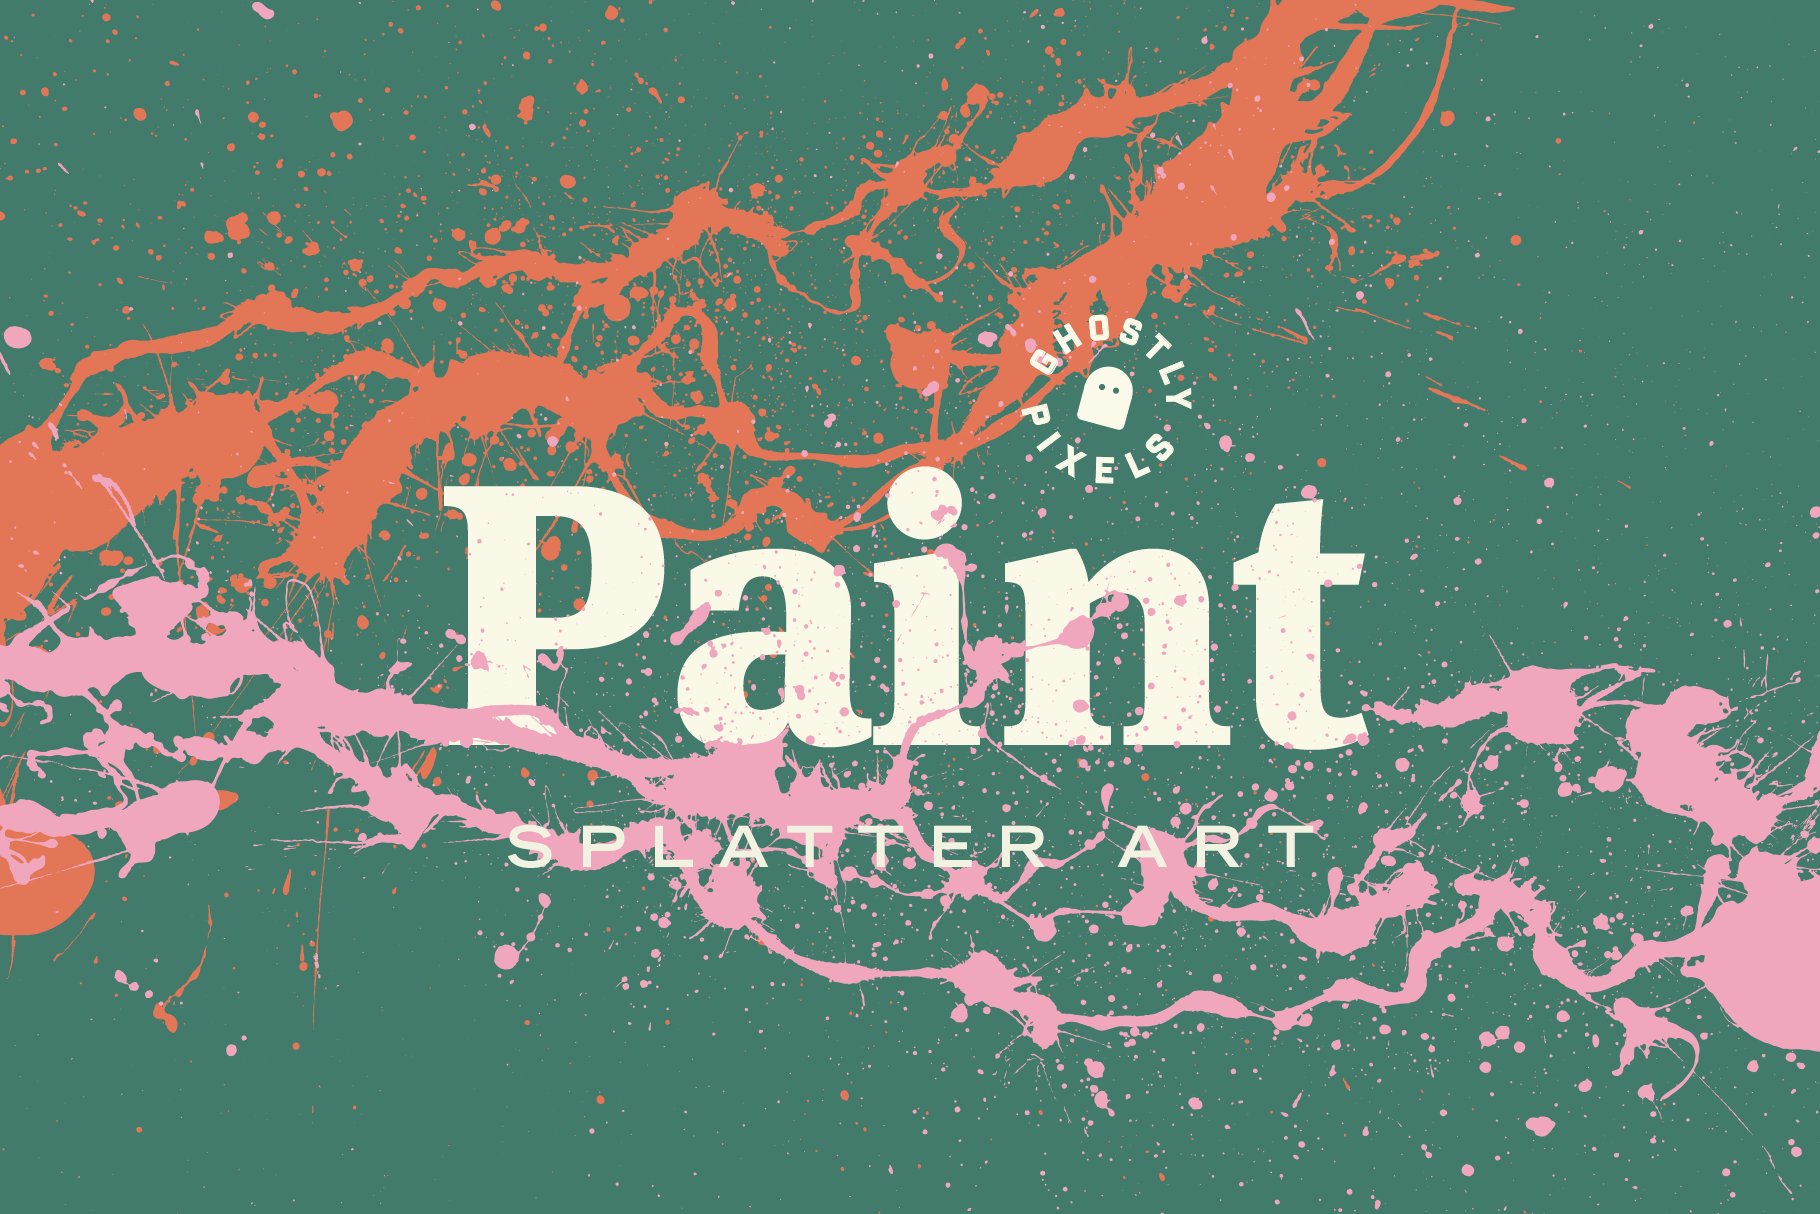 Paint Splatter Art cover image.